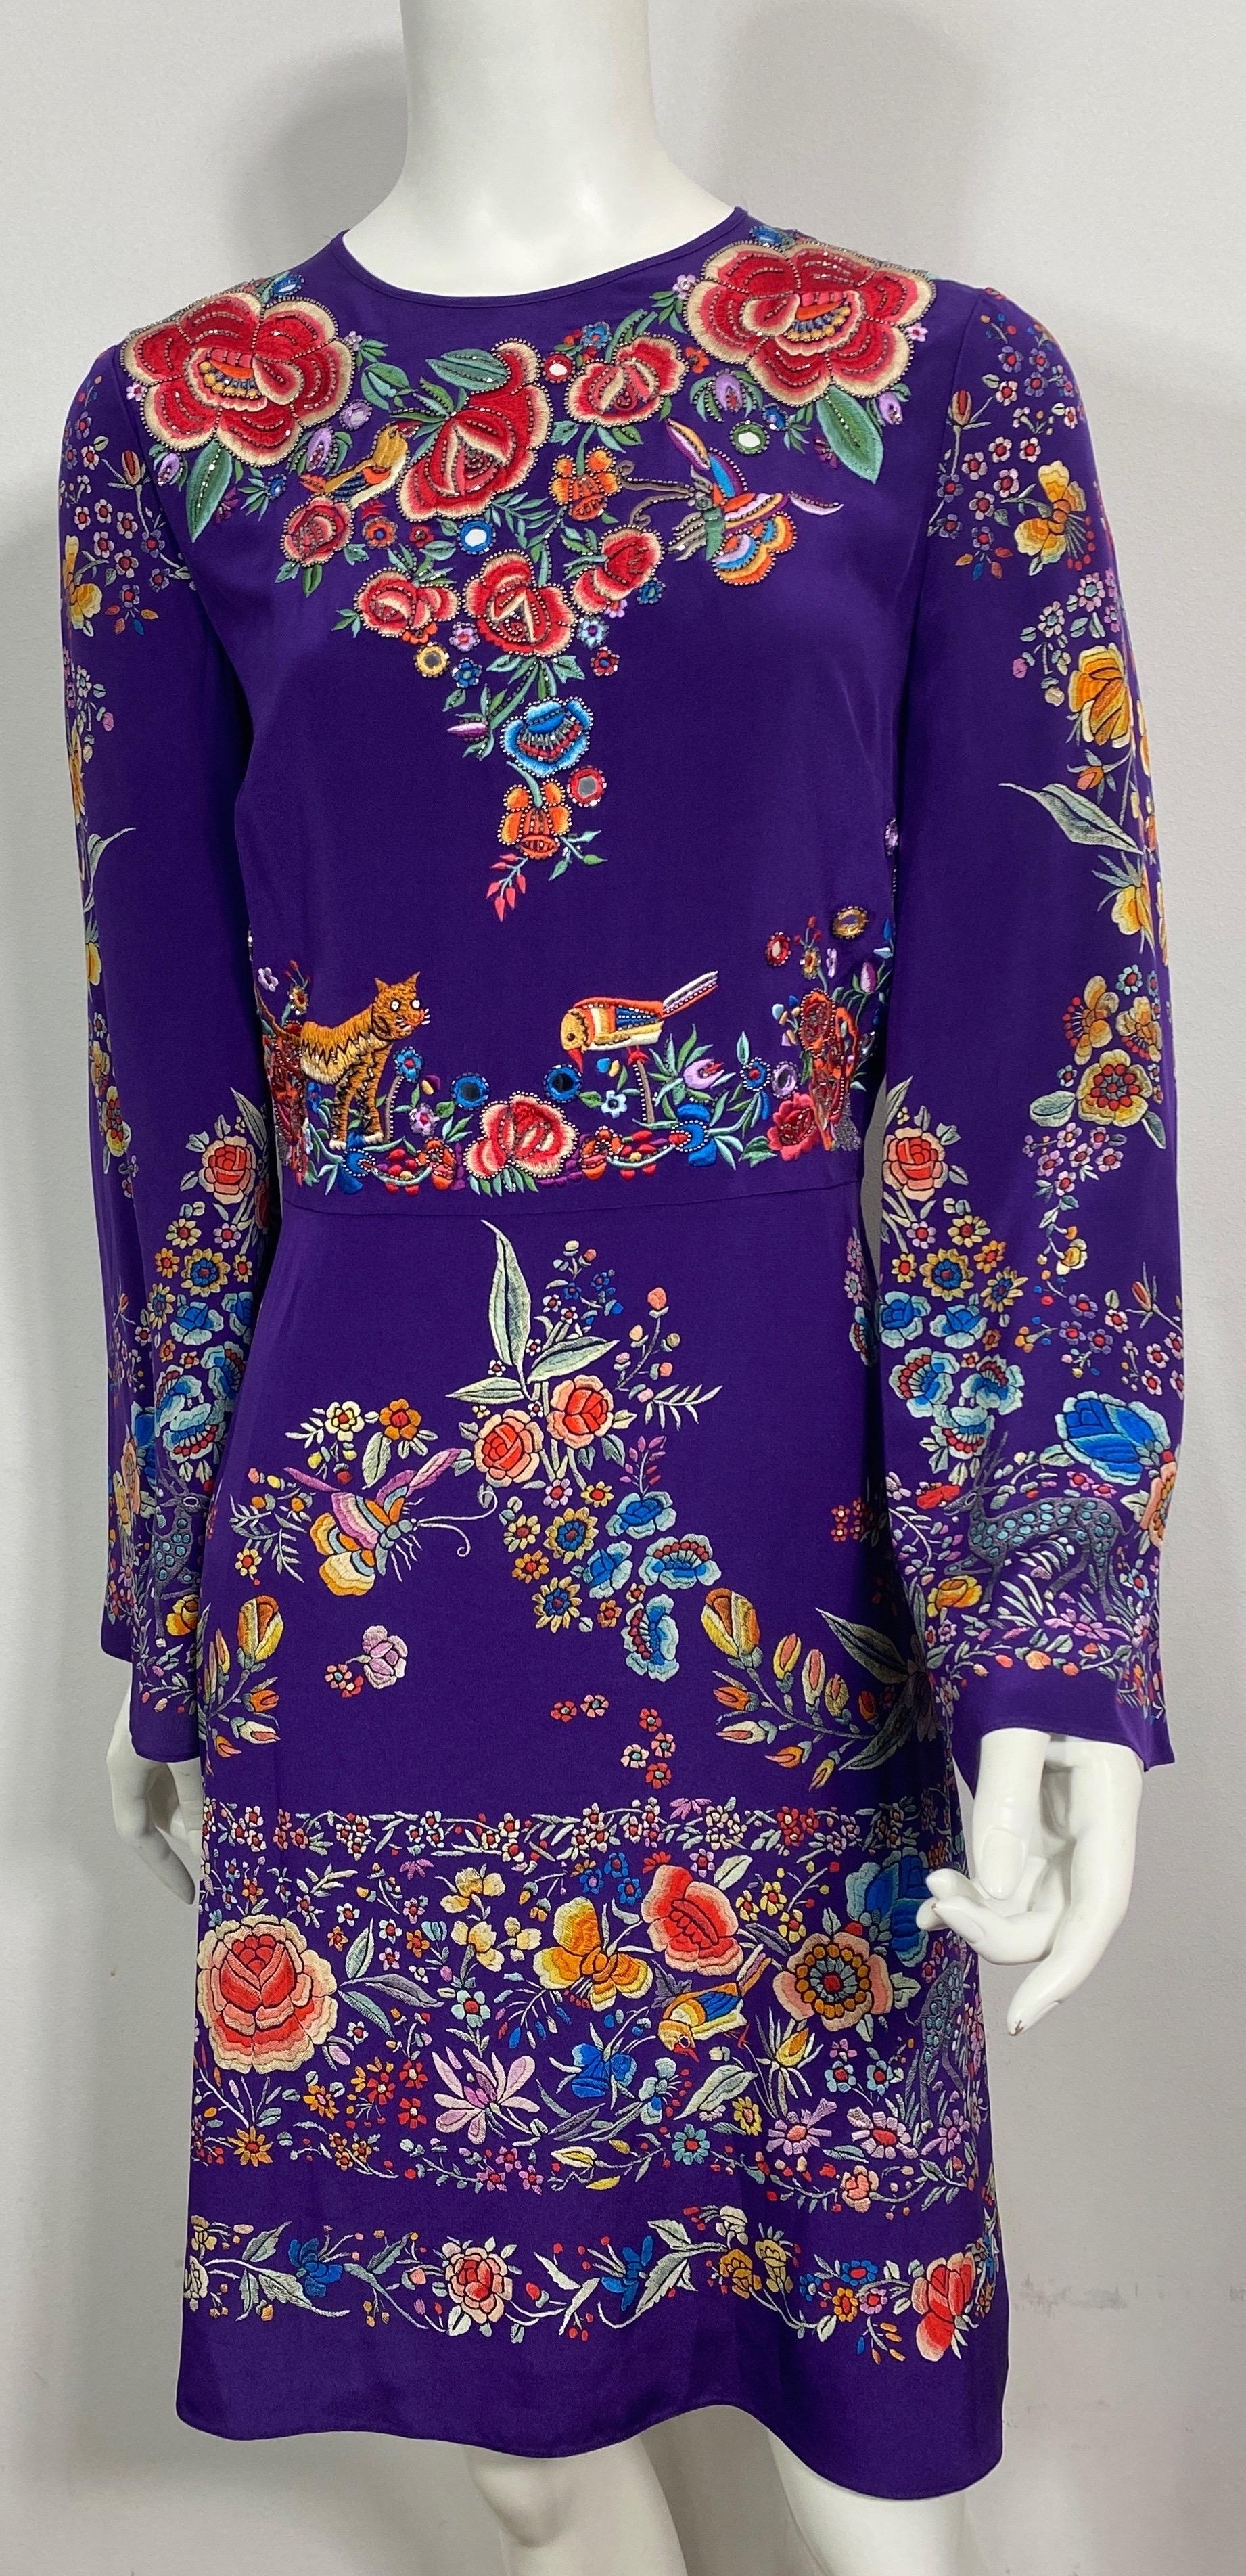 Roberto Cavalli Resort 2017 Purple Multi Embroidered Silk Dress-Size 40 Cette robe à manches longues en soie imprimée violette présente un motif de fleurs et d'abeilles, d'oiseaux et de chats aux couleurs multi-vivantes. Le devant de la robe